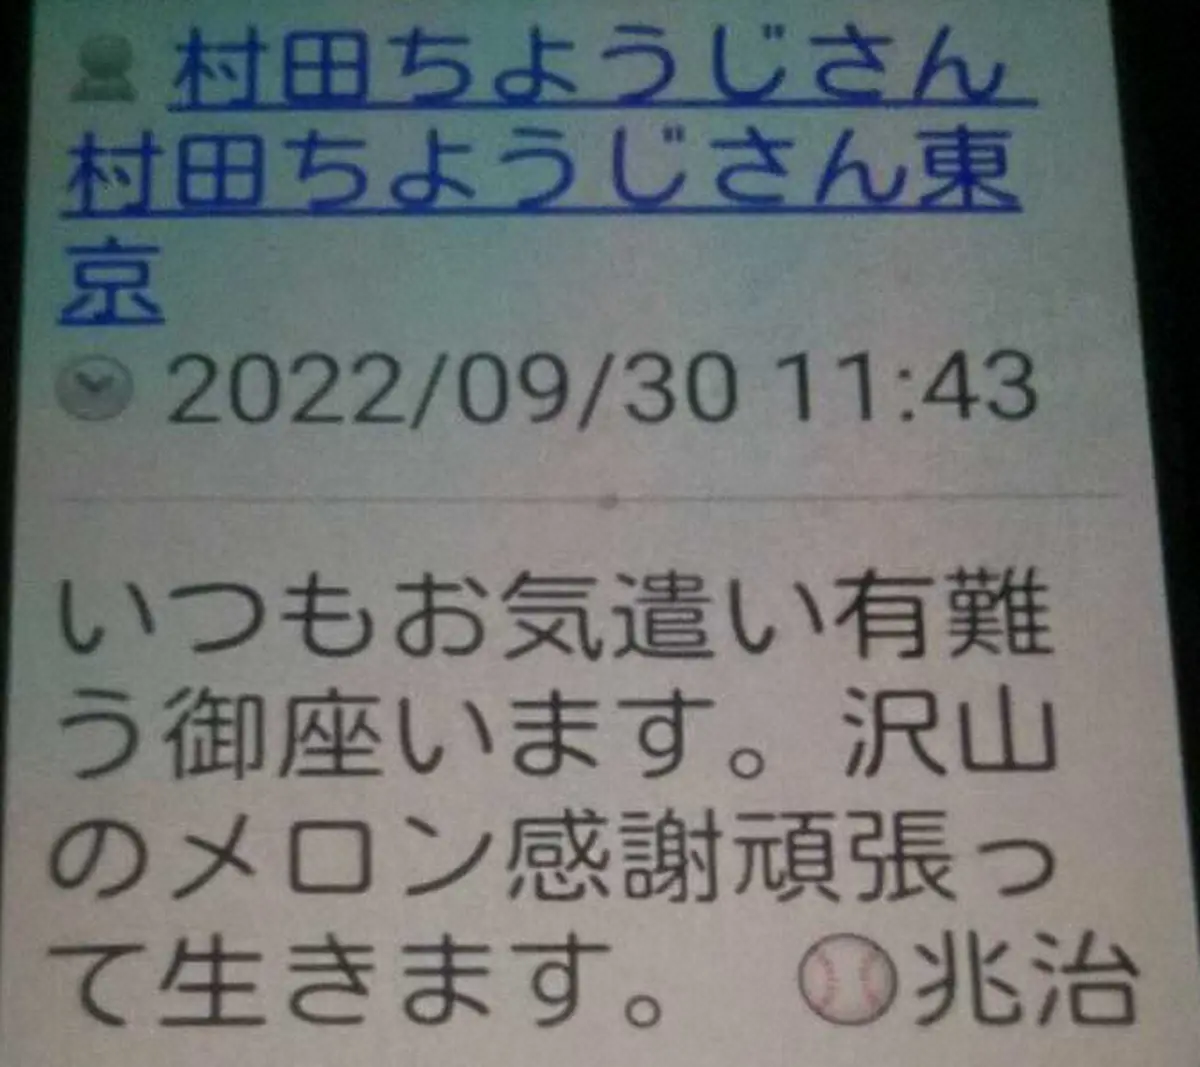 村田兆治さんの友人に逮捕後届いた最後のメール「頑張って生きます」